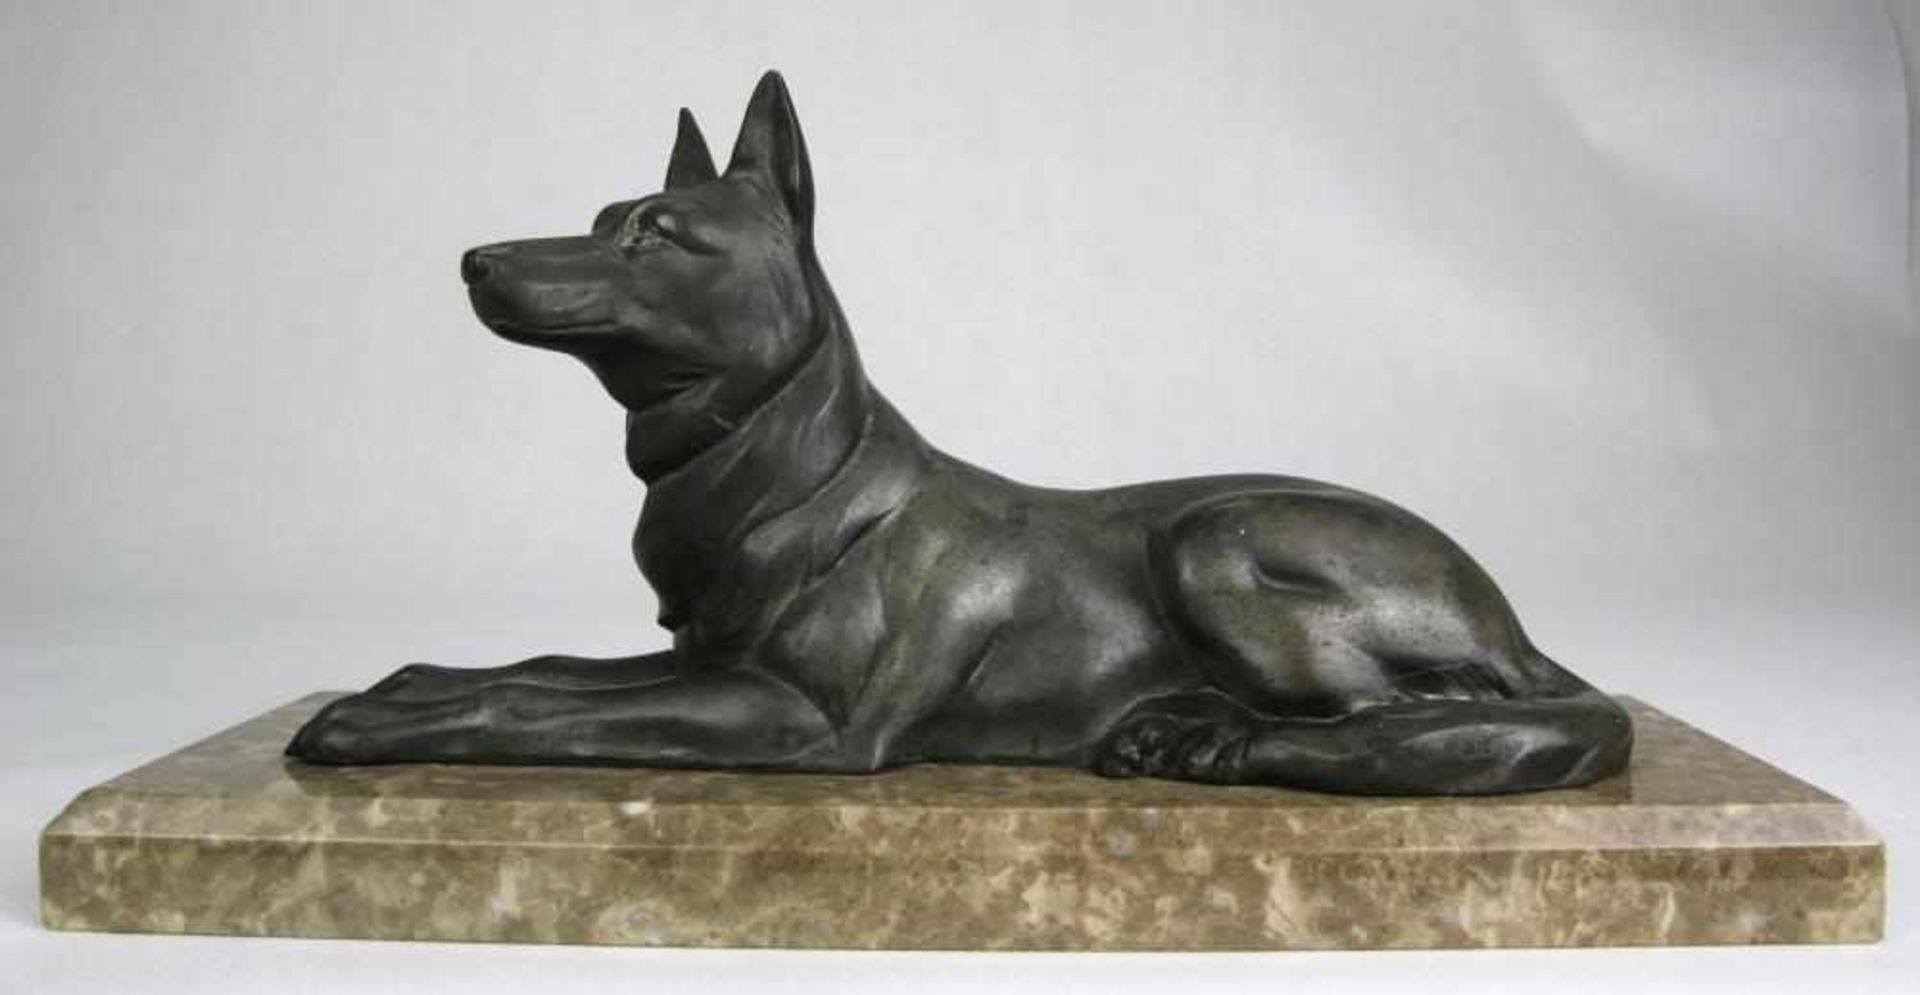 Liegender Schäferhund Frankreich um 1900. Metallguß und gefaste Steinplinthe. Größe ca. 30 x 10